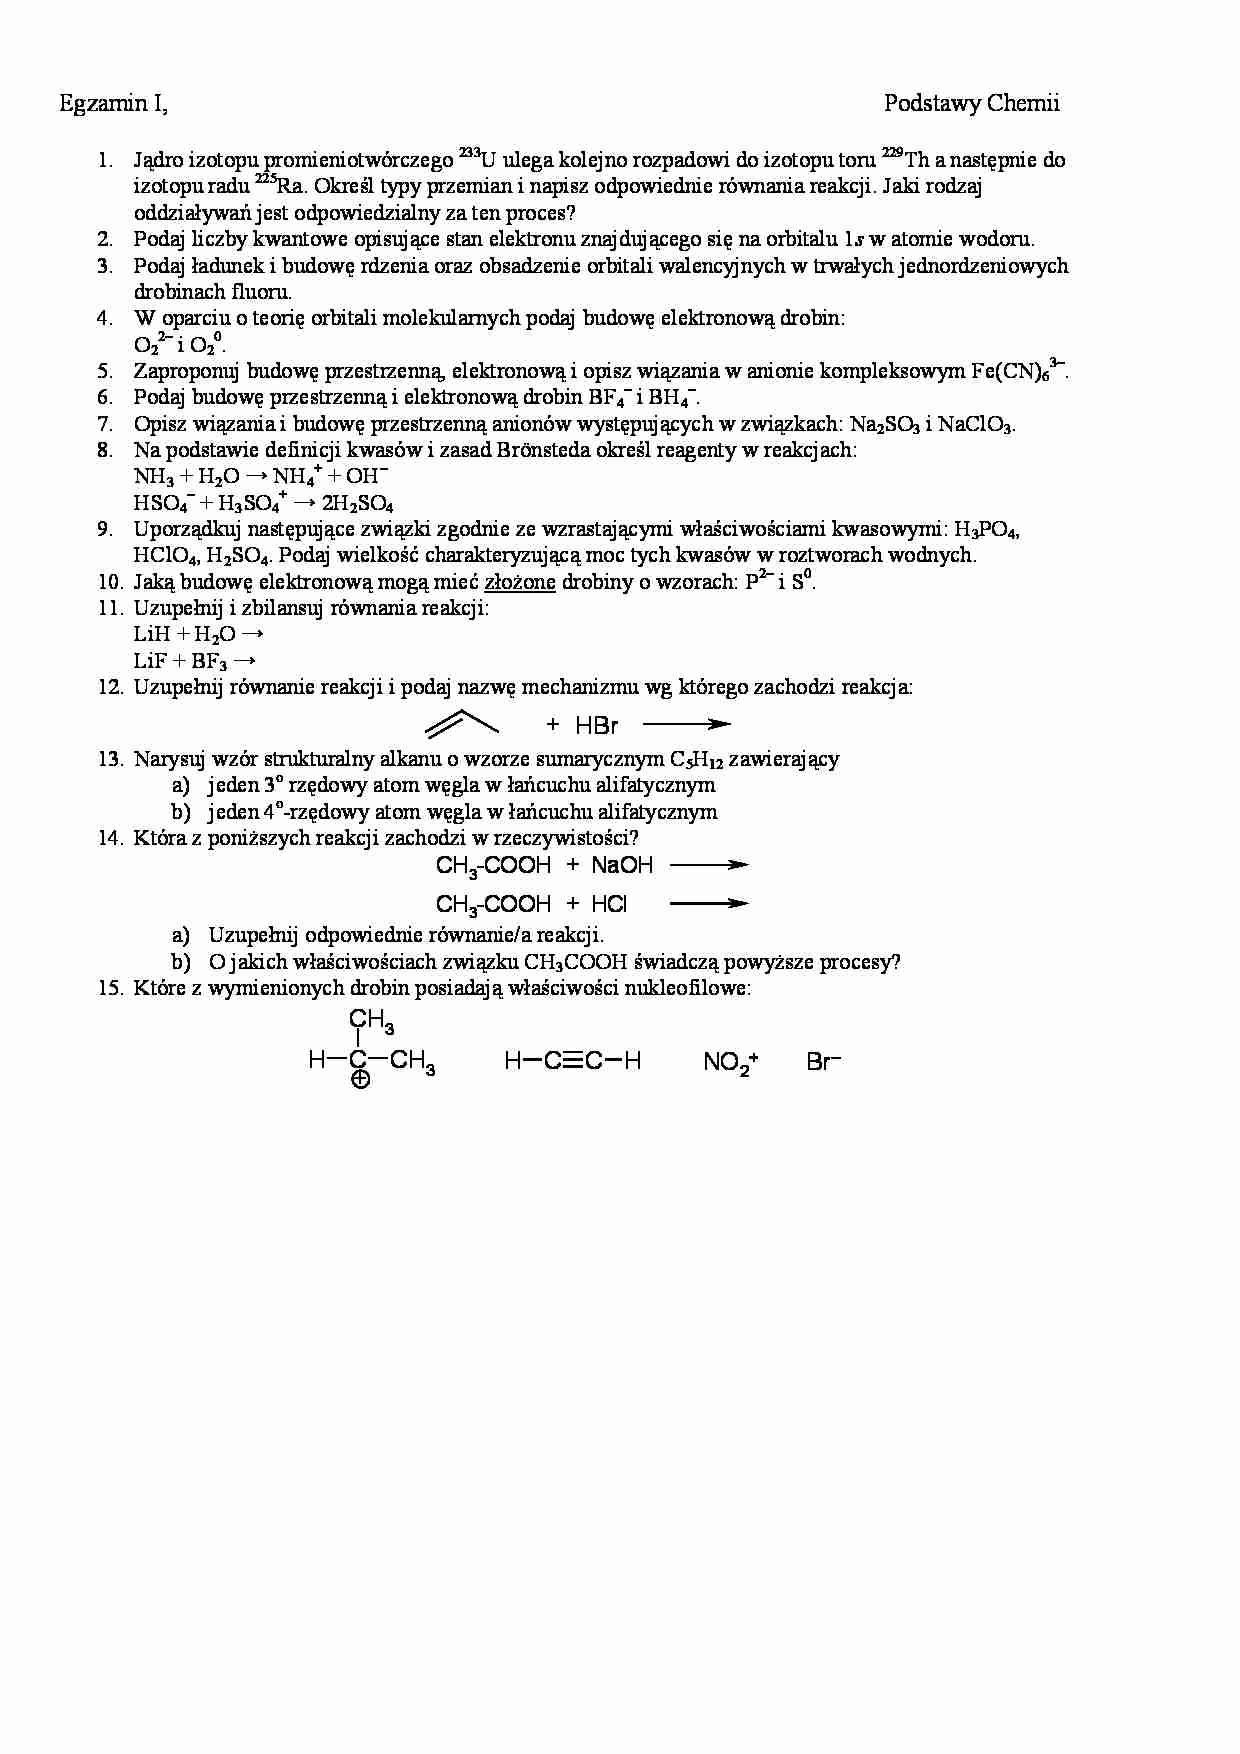 Chemia ogólna i nieorganiczna-egzamin 1 - strona 1